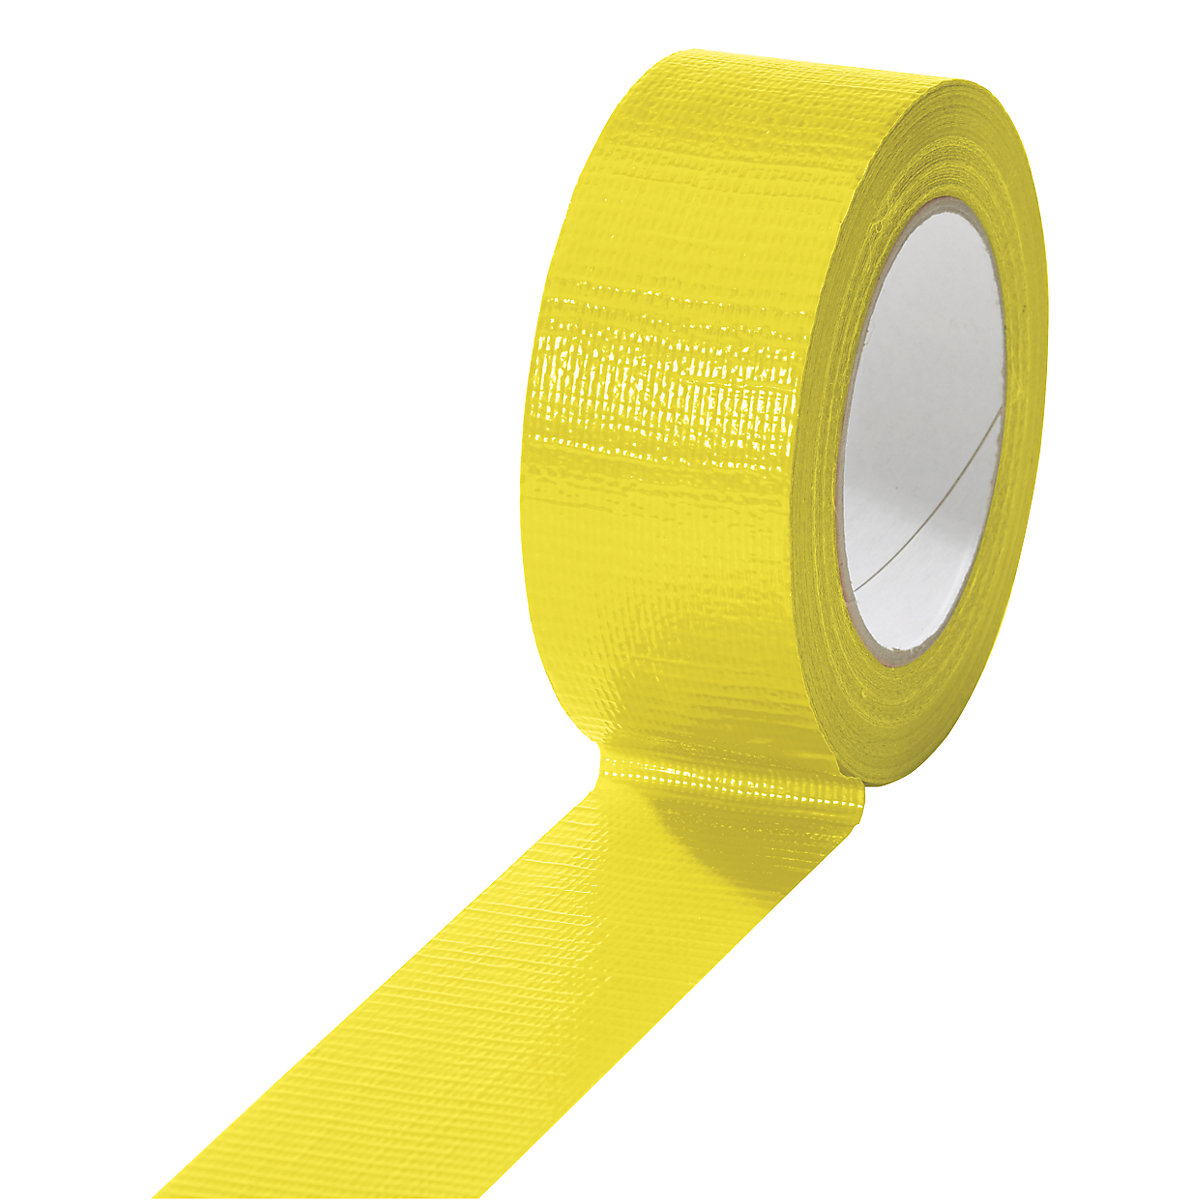 Gewebeband, in verschiedenen Farben, VE 24 Rollen, gelb, Bandbreite 38 mm-7